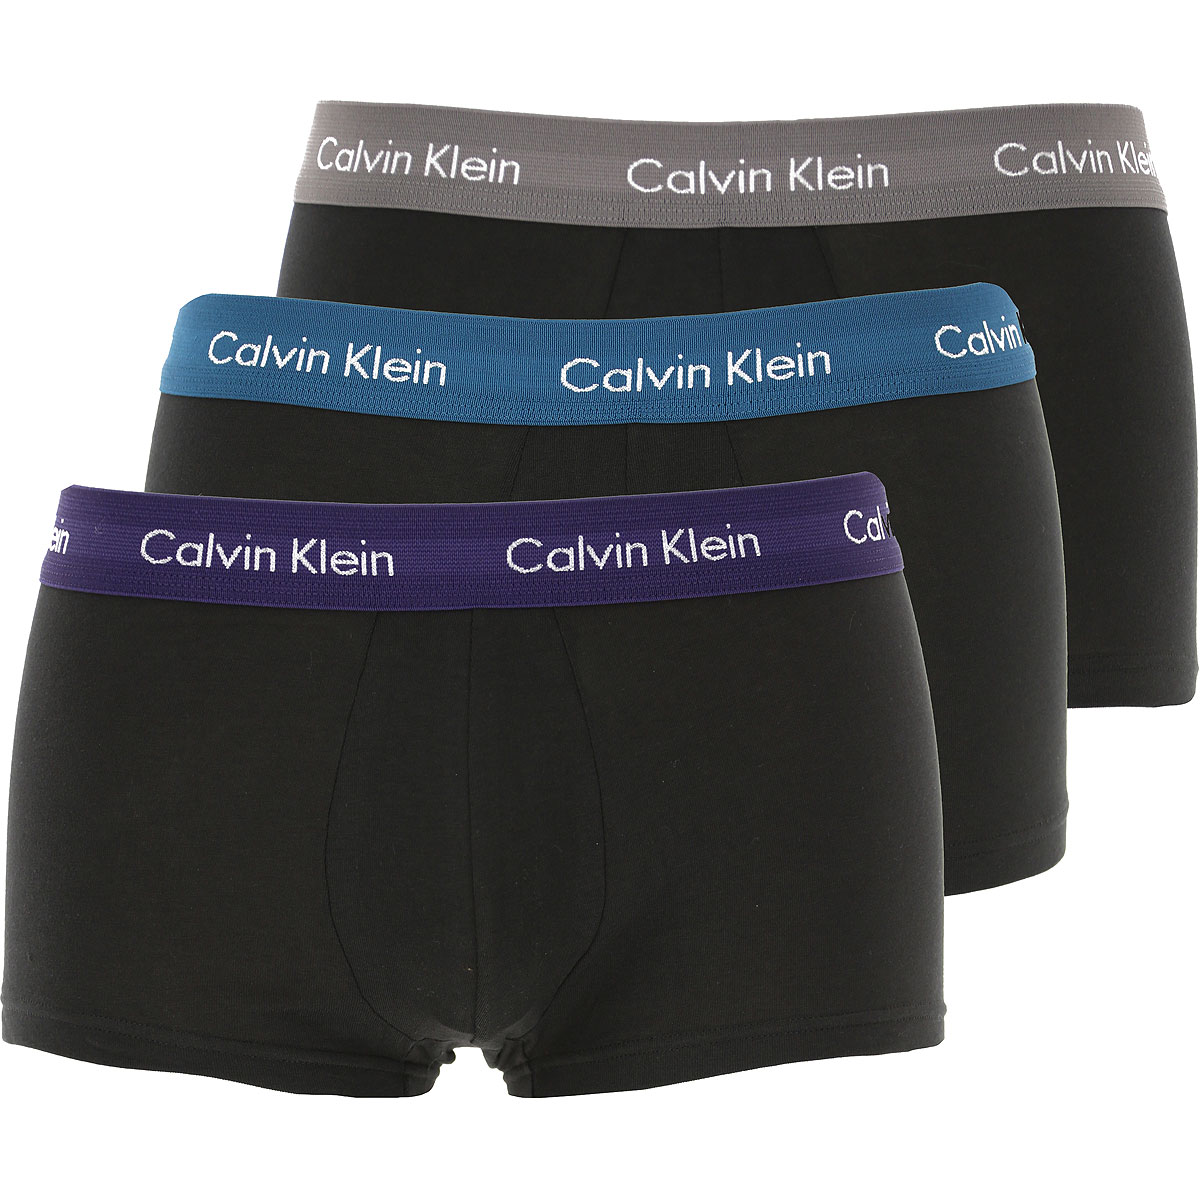 Calvin Klein Boxer Shorts für Herren, Unterhose, Short, Boxer Günstig im Sale, 3 Pack, Schwarz, Baumwolle, 2017, L M S XS